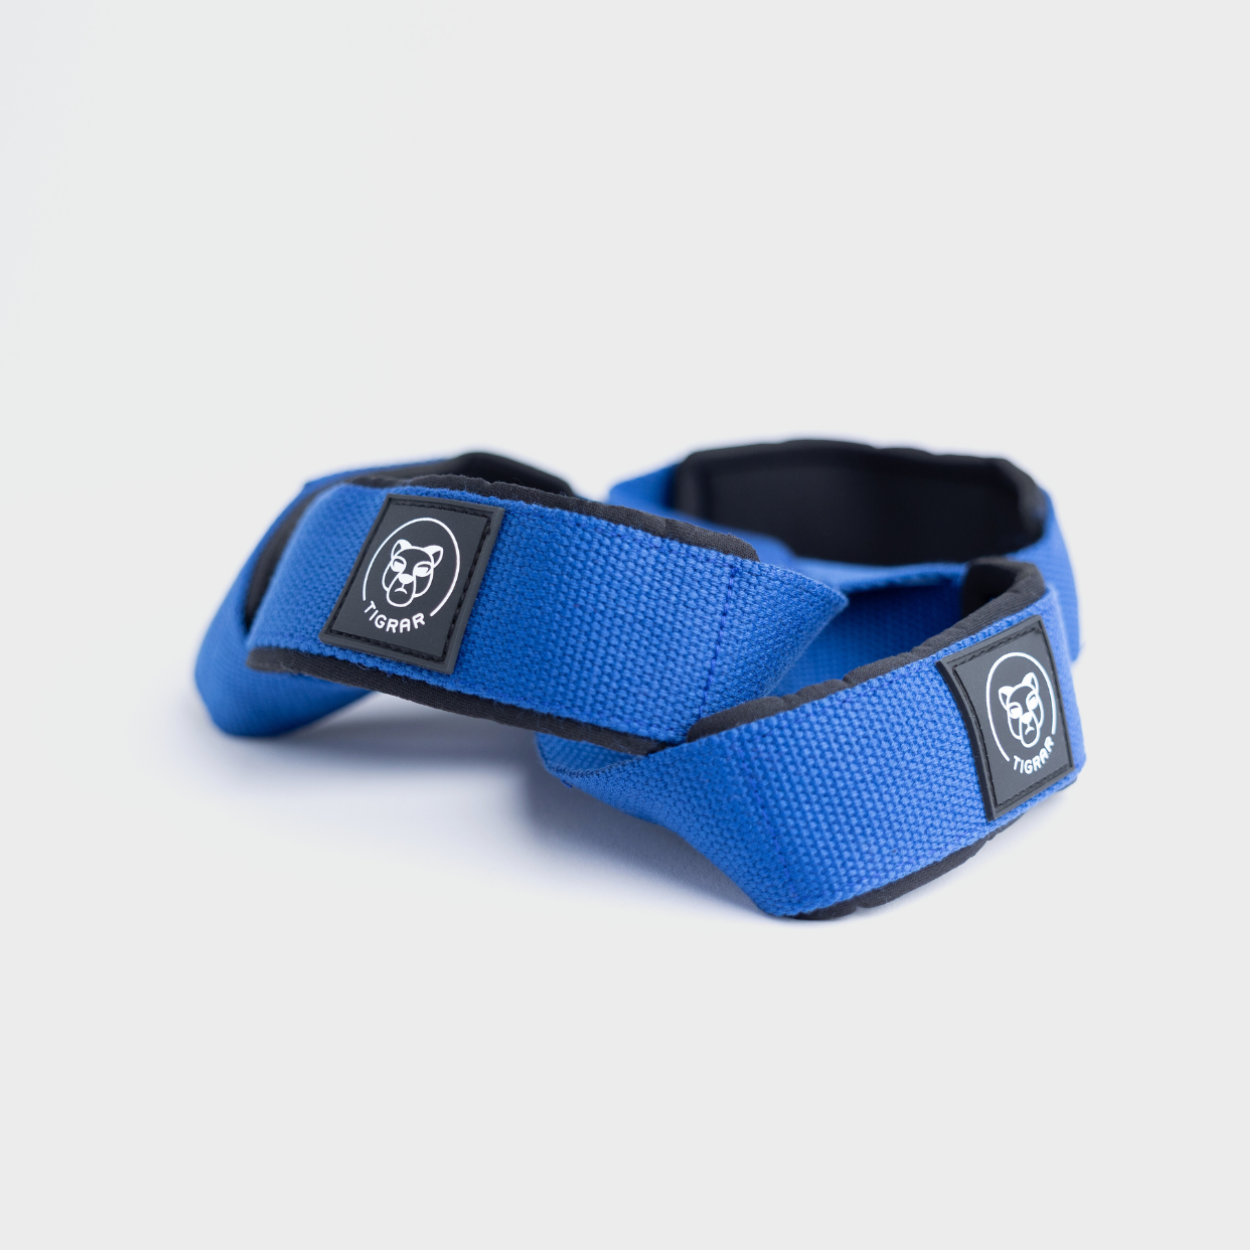 Blauwe Tigrar Figure 8 lifting straps, ideaal voor het verbeteren van grip en techniek, tegen een grijze achtergrond.